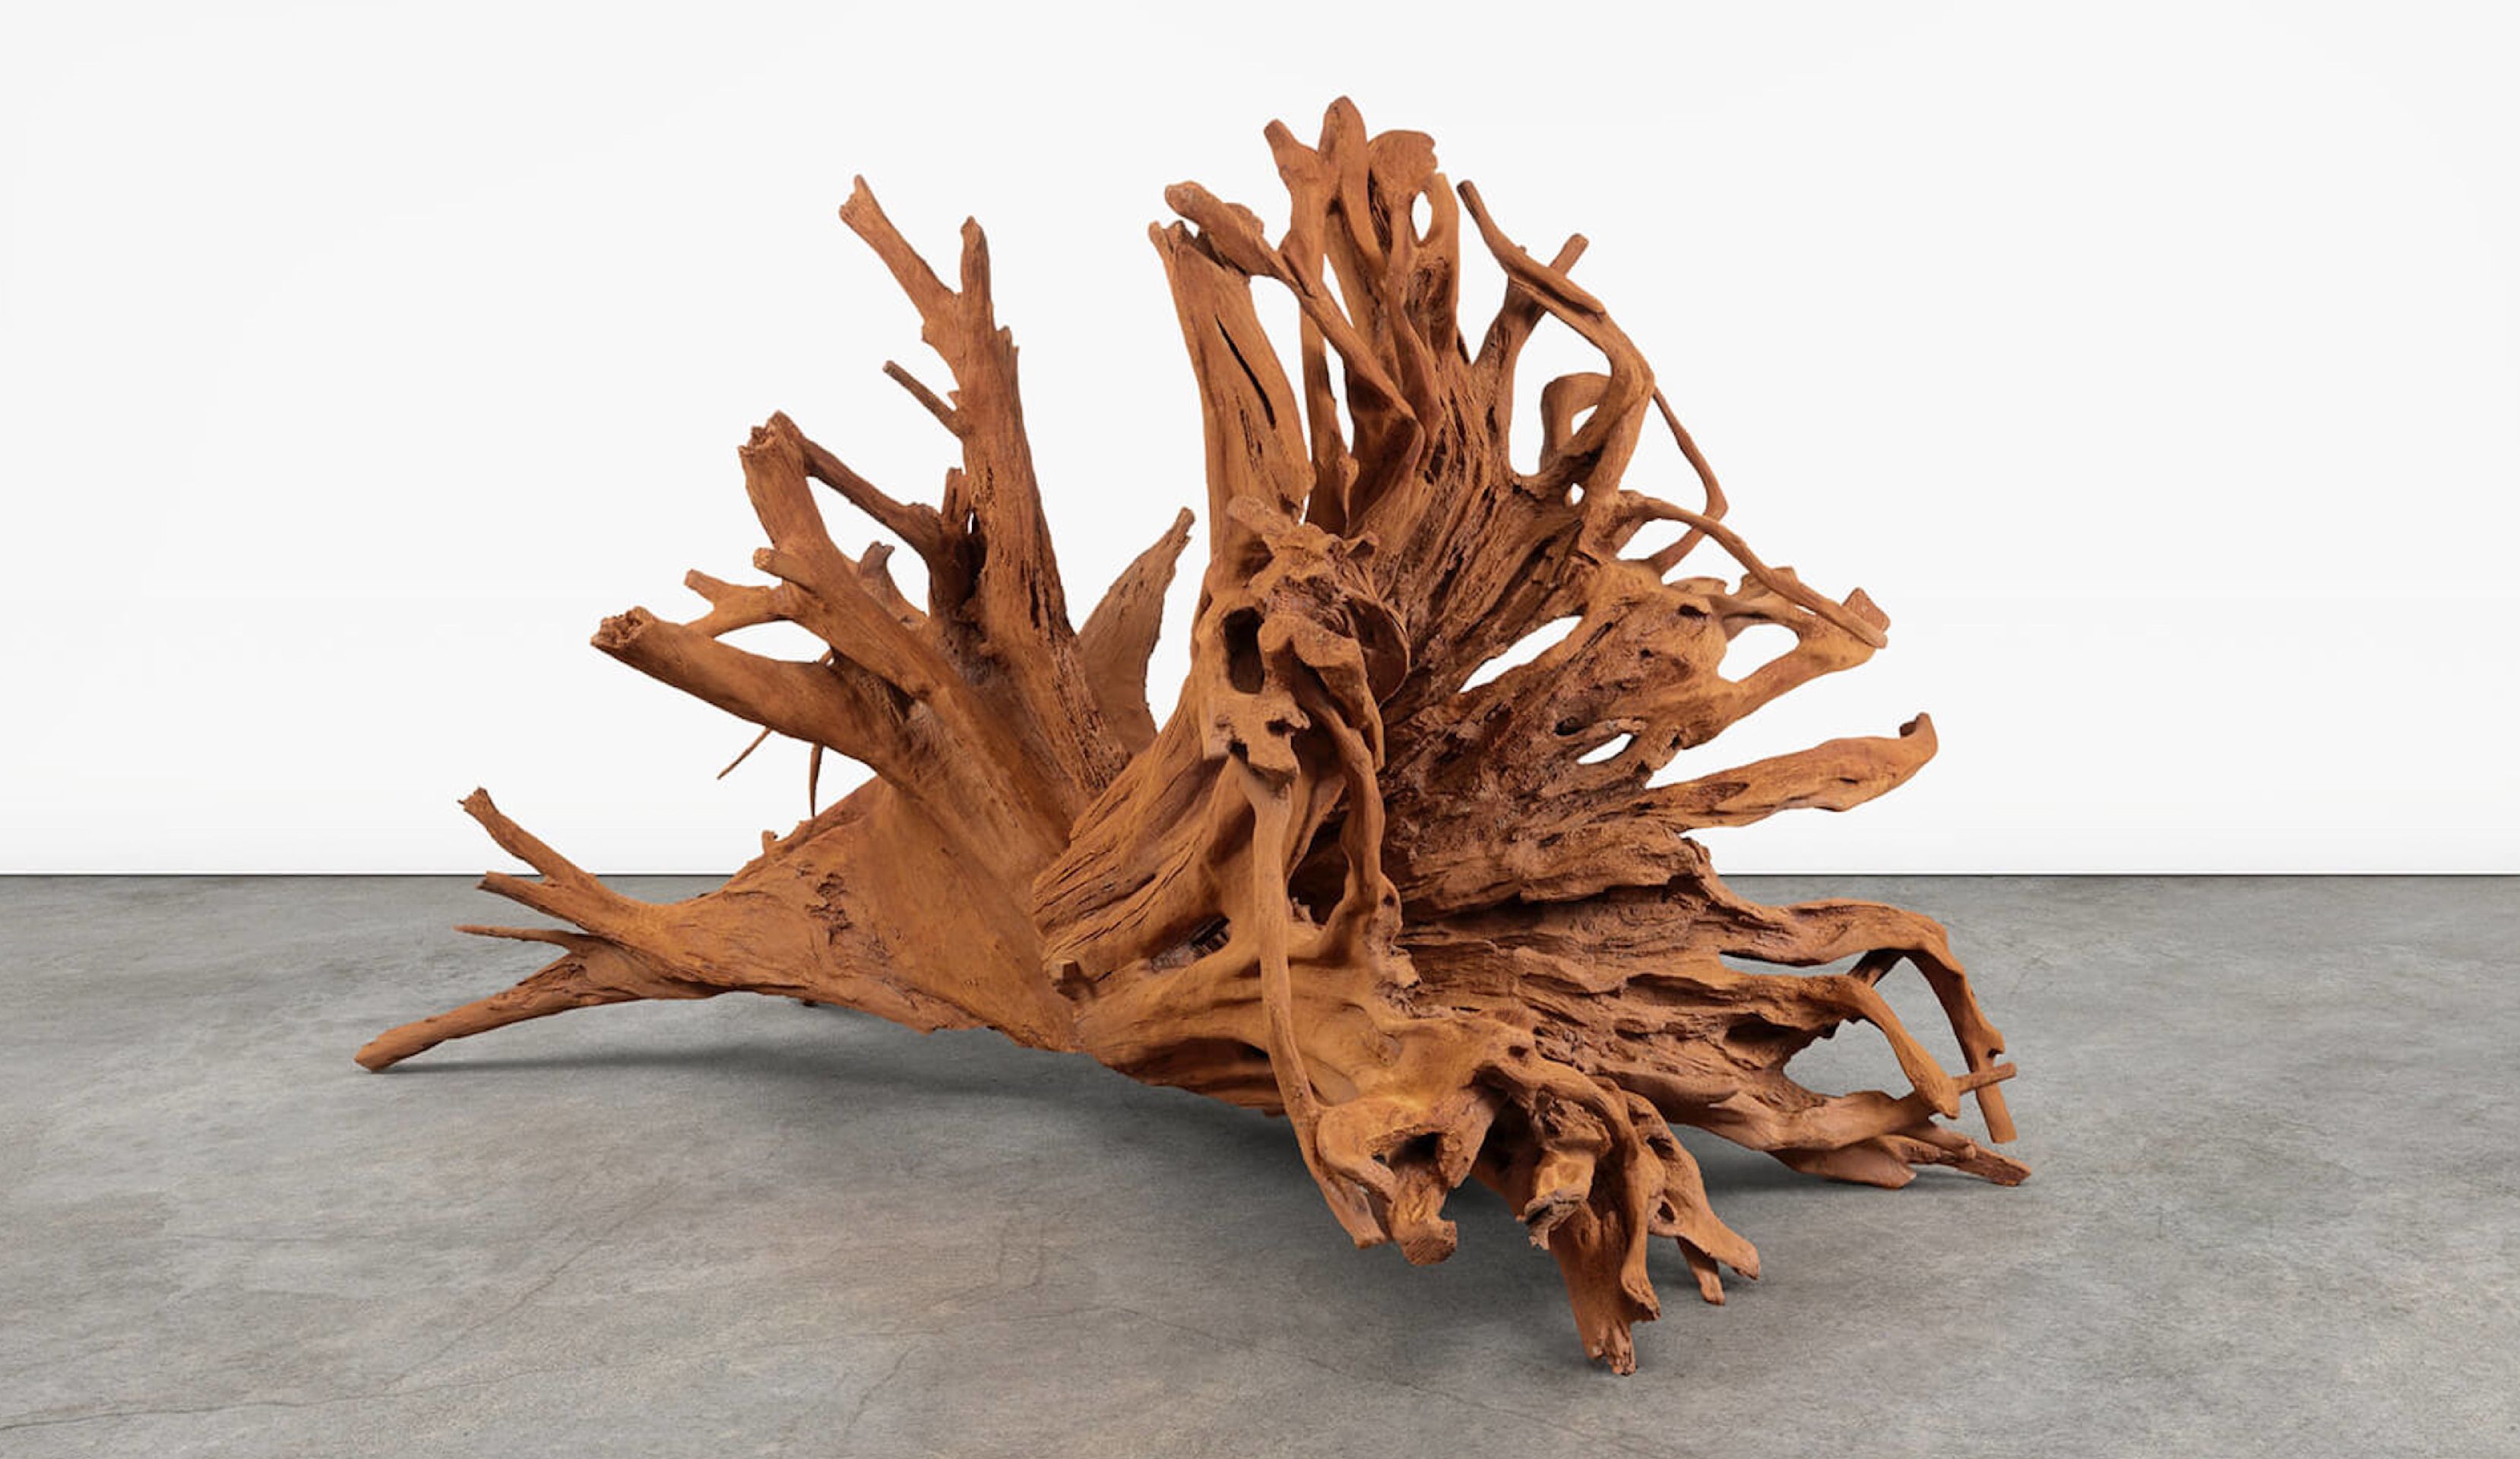 Roots Run Deep – The Work of Ai Weiwei